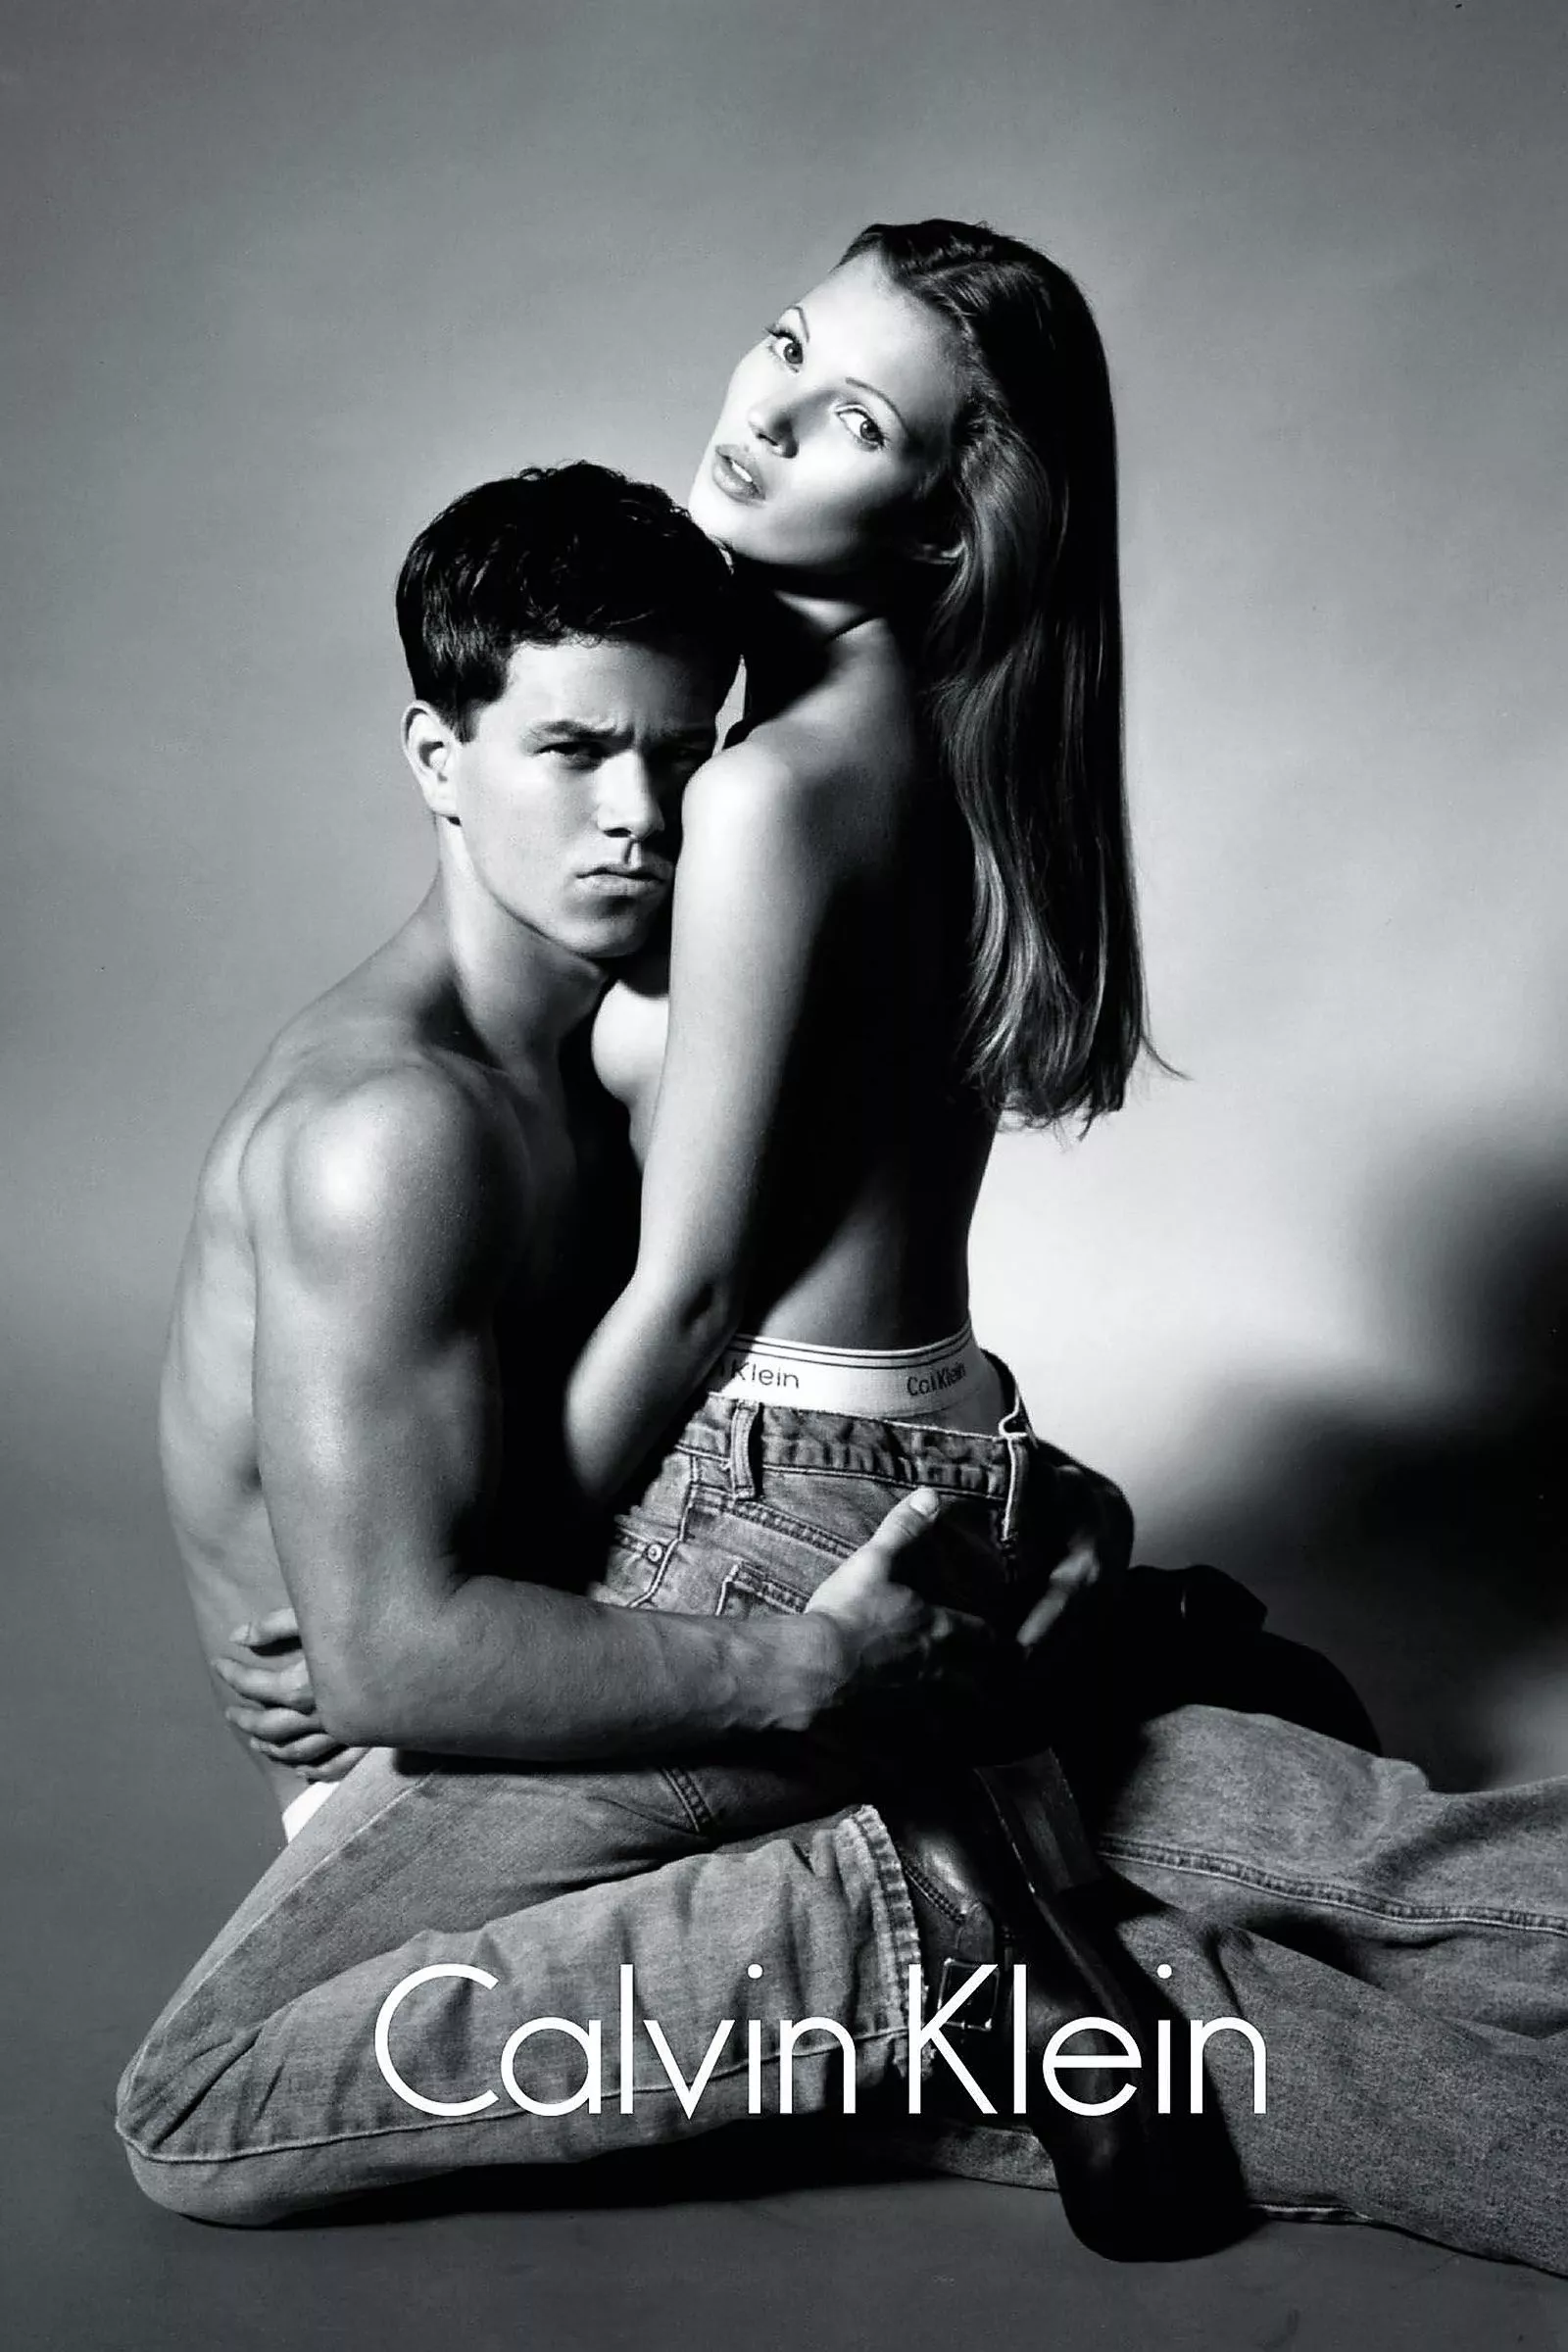 Марк Уолберг и Кейт Мосс для скандальной рекламной кампании Calvin Klein, фотограф Херб Риттс, 1992 г.